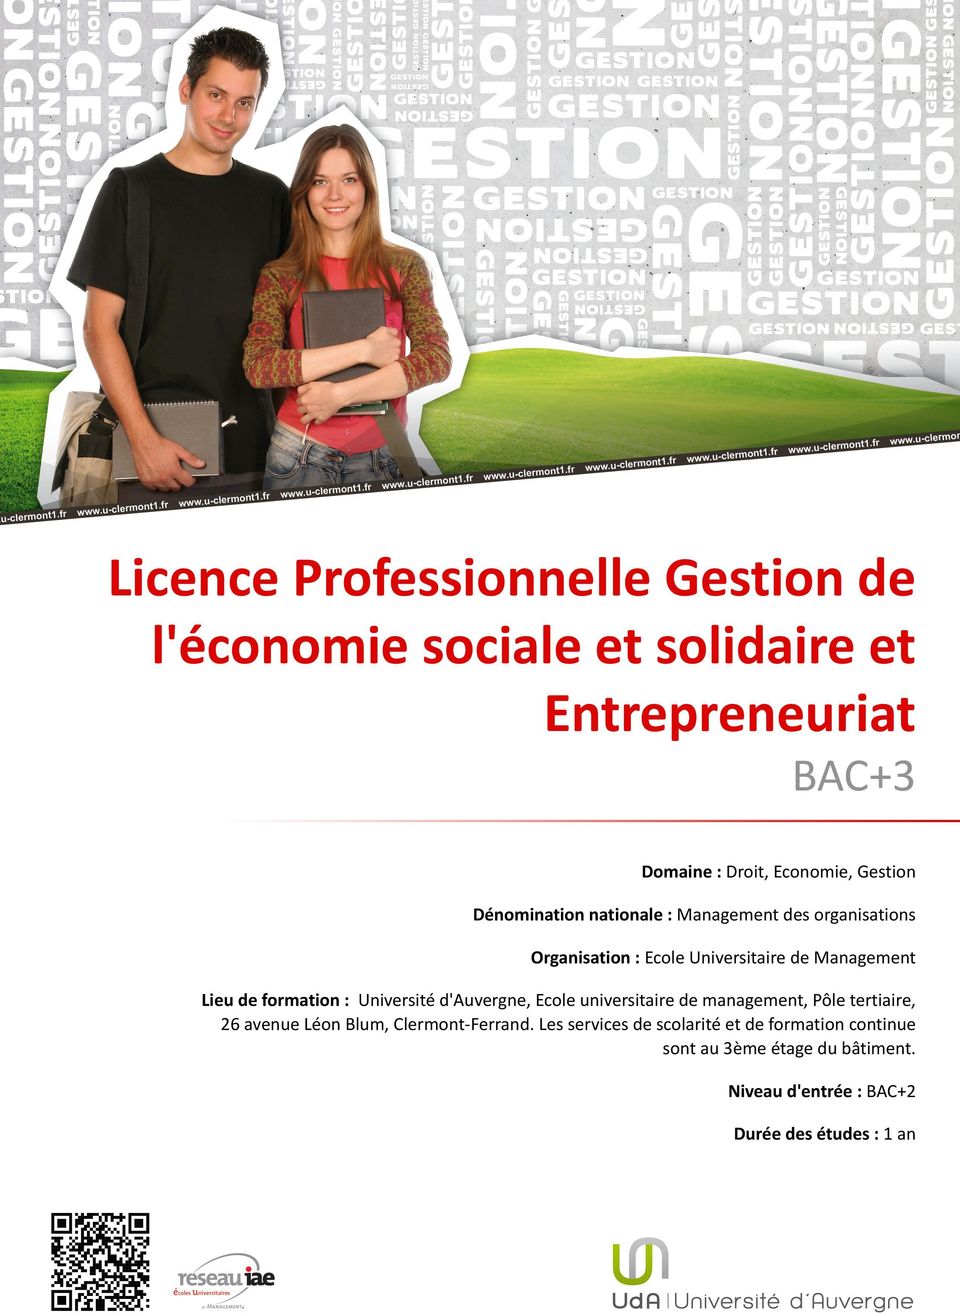 formation : Université d'auvergne, Ecole universitaire de management, Pôle tertiaire, 26 avenue Léon Blum, Clermont-Ferrand.